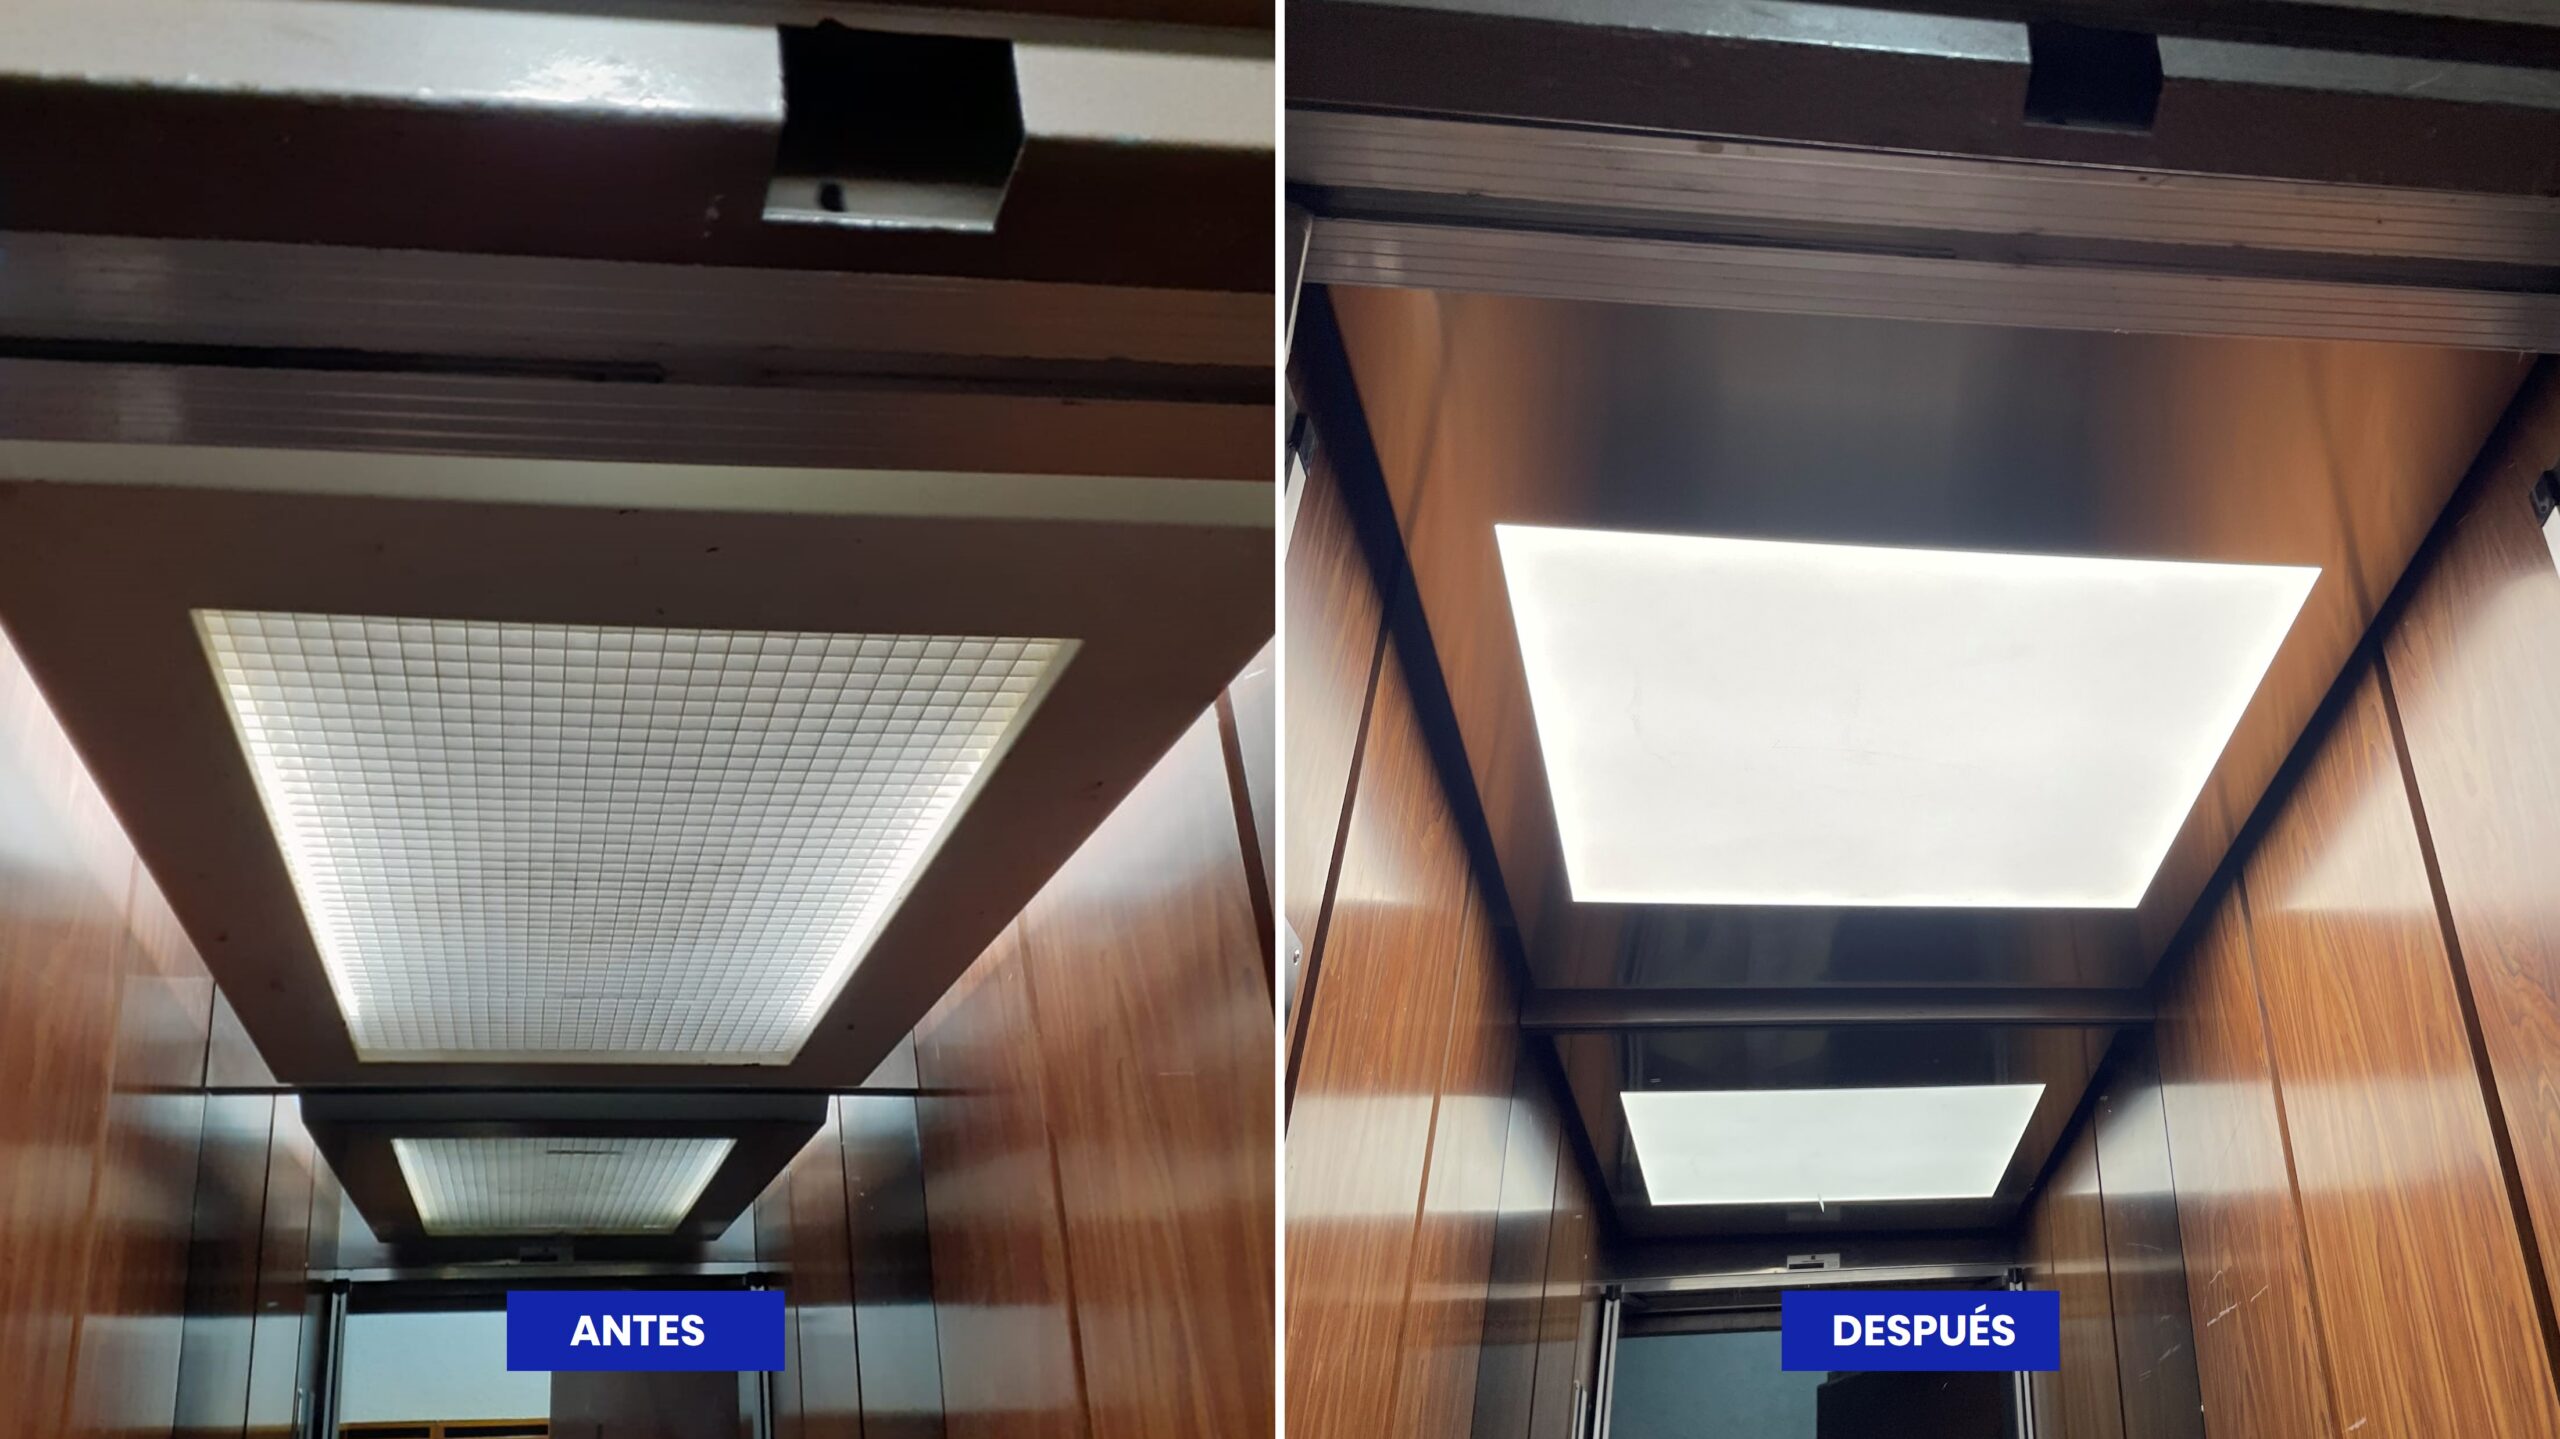 Renovar las luminarias del ascensor y sustituirlas por luces led facilita el ahorro y la eficiencia energética